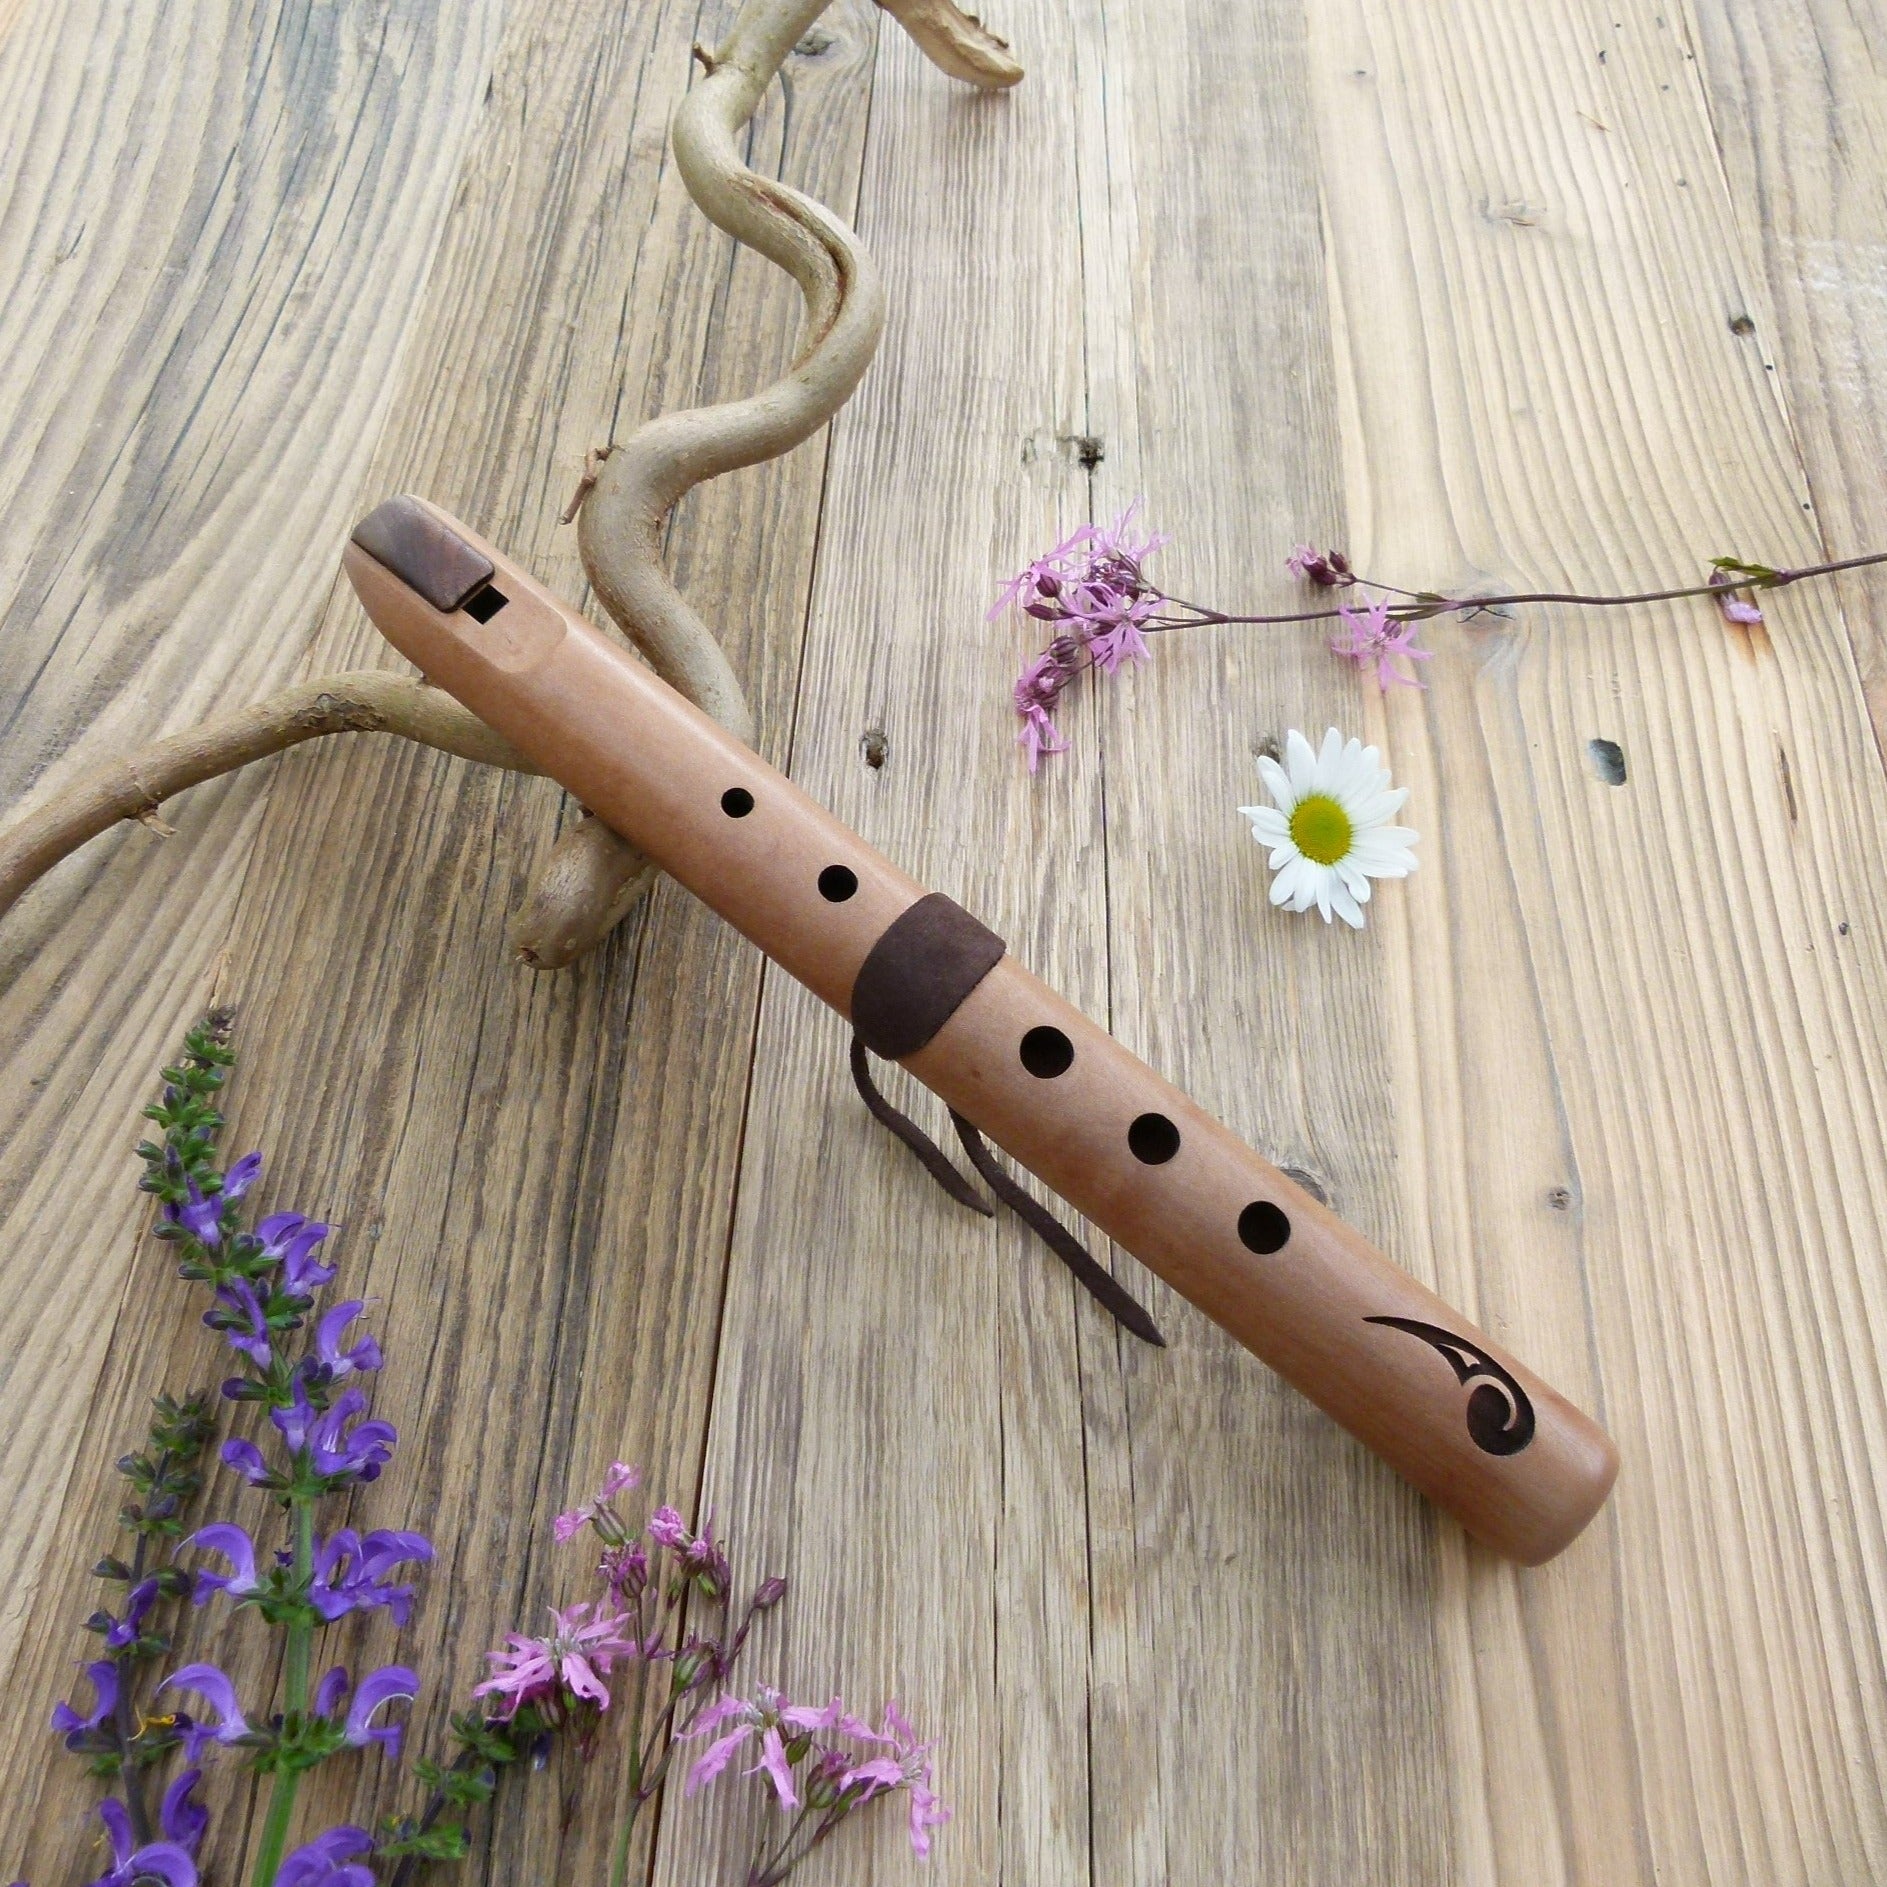 Spirit Flute Traditionell - hohes C | Blasinstrumente | Indianische Flöten | Dunum.ch